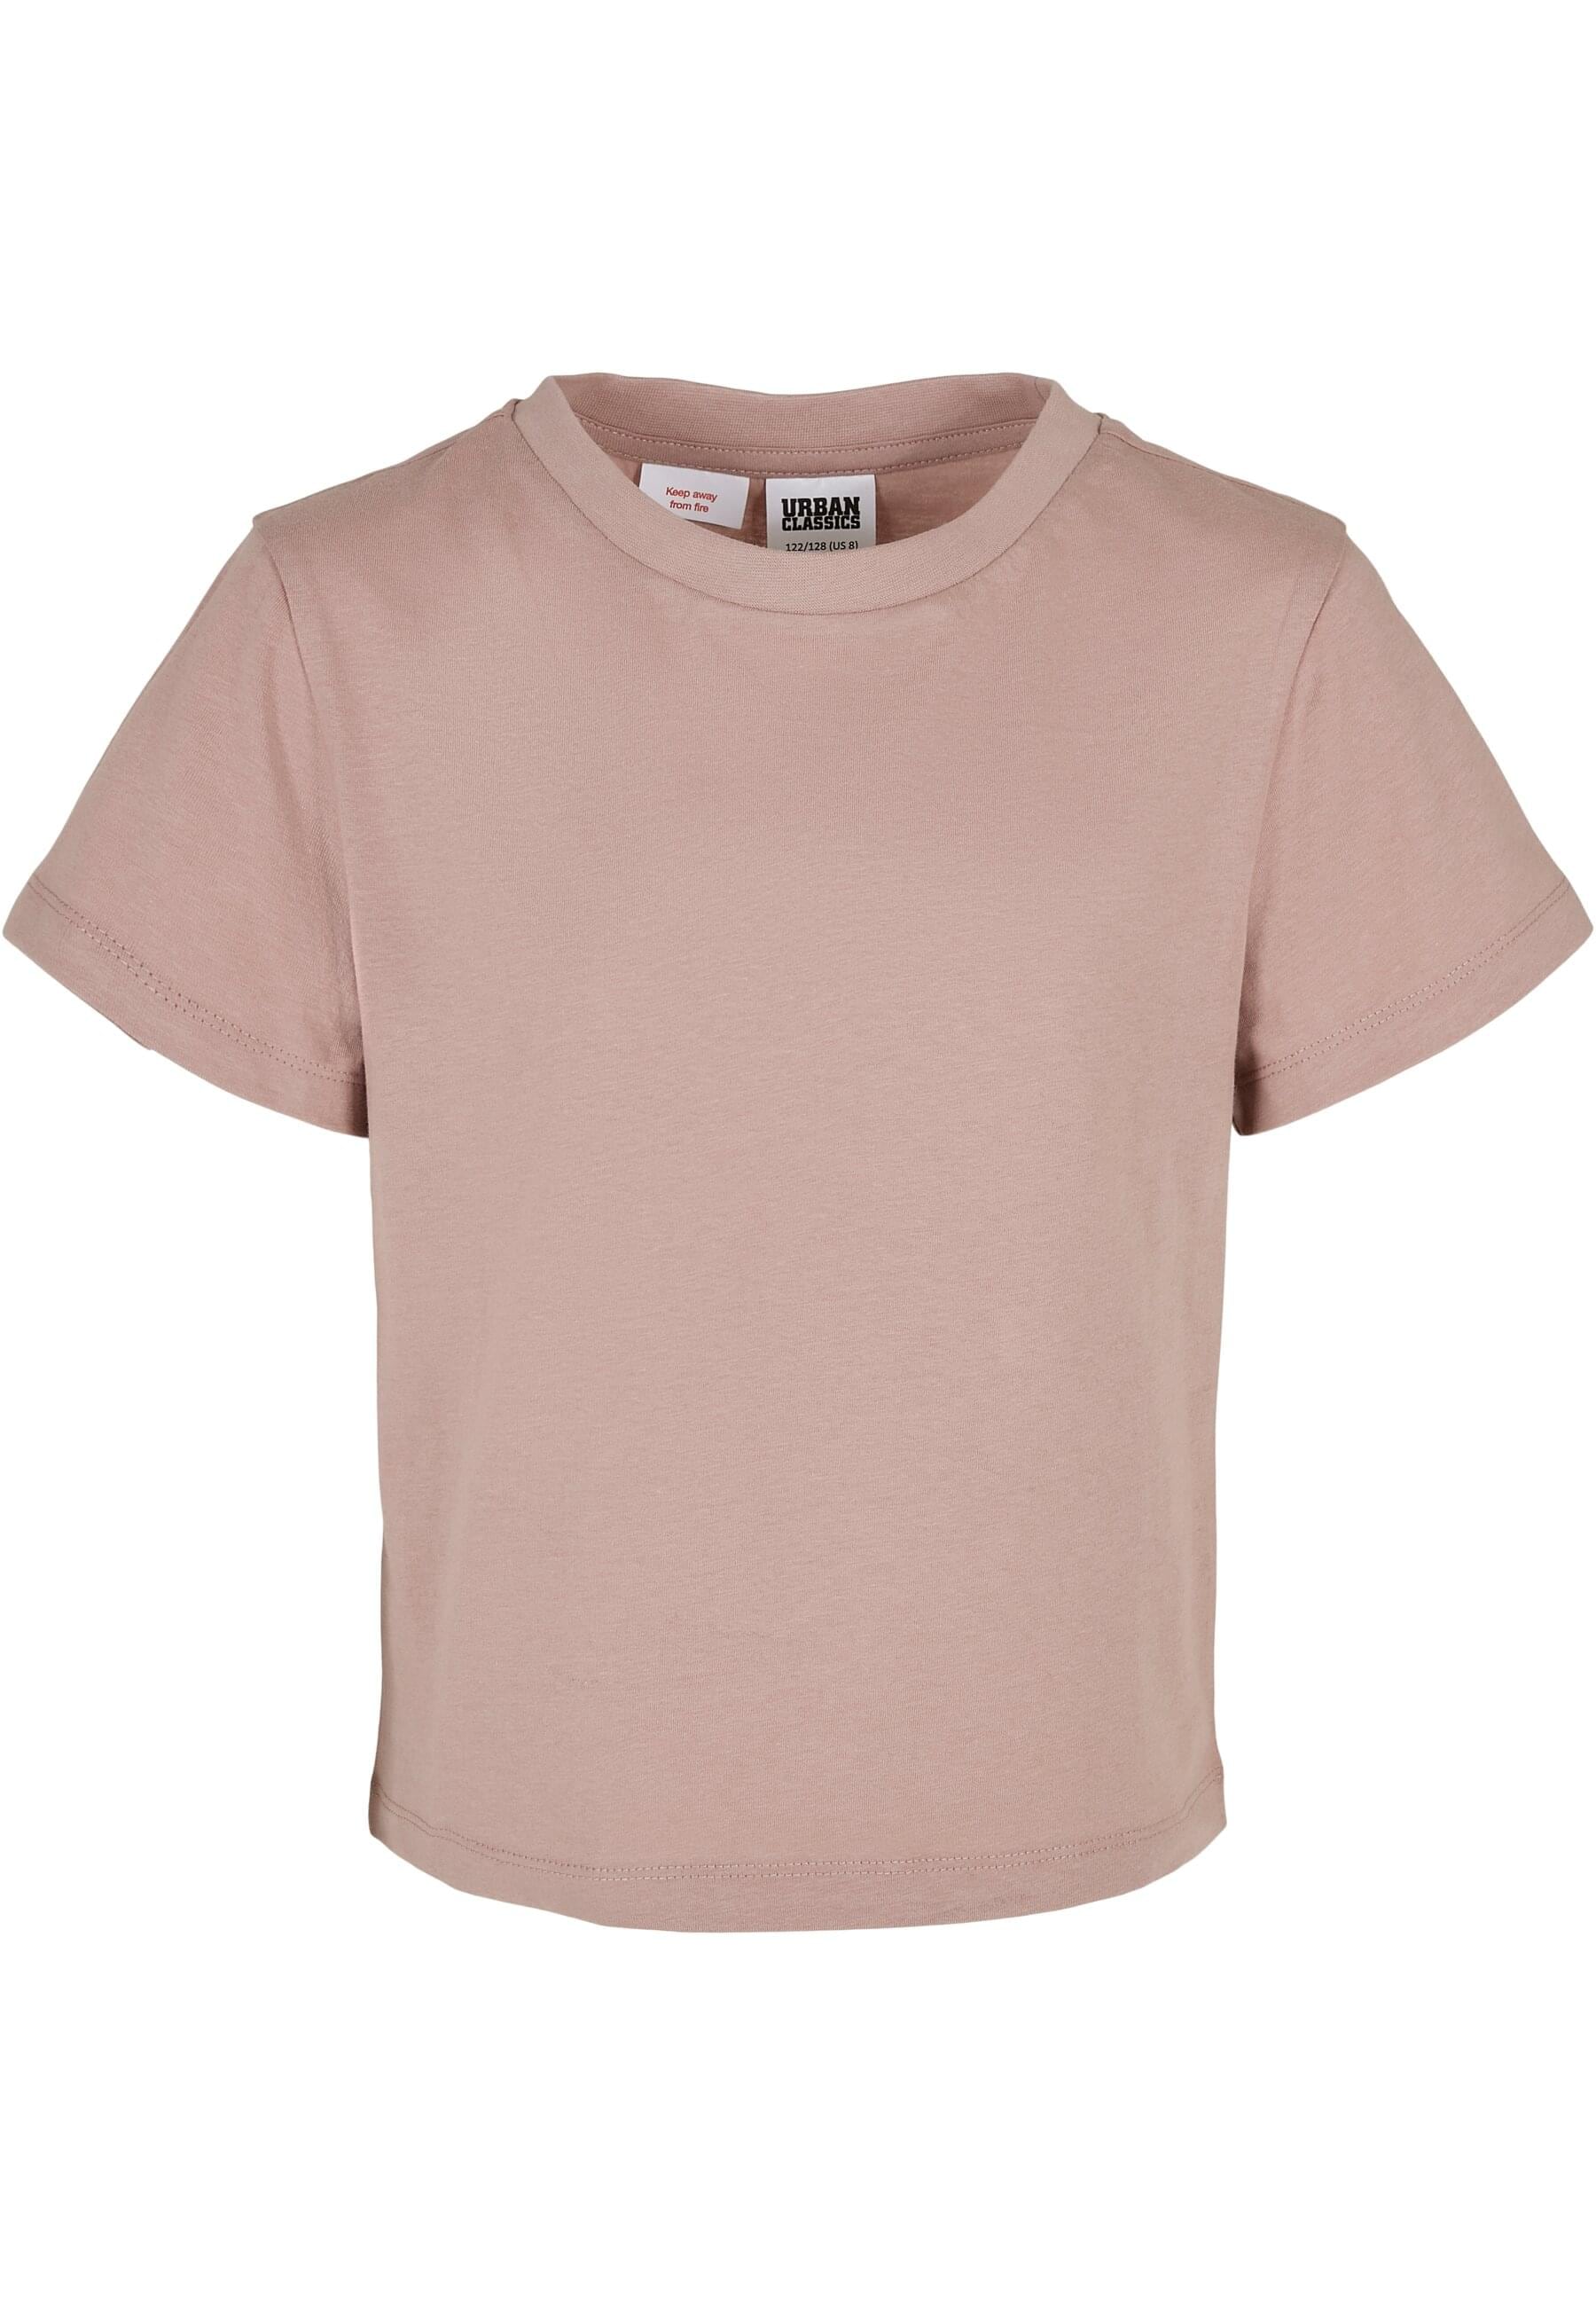 URBAN CLASSICS T-Shirt »Urban Classics Damen Girls Basic Box Tee«, (1 tlg.)